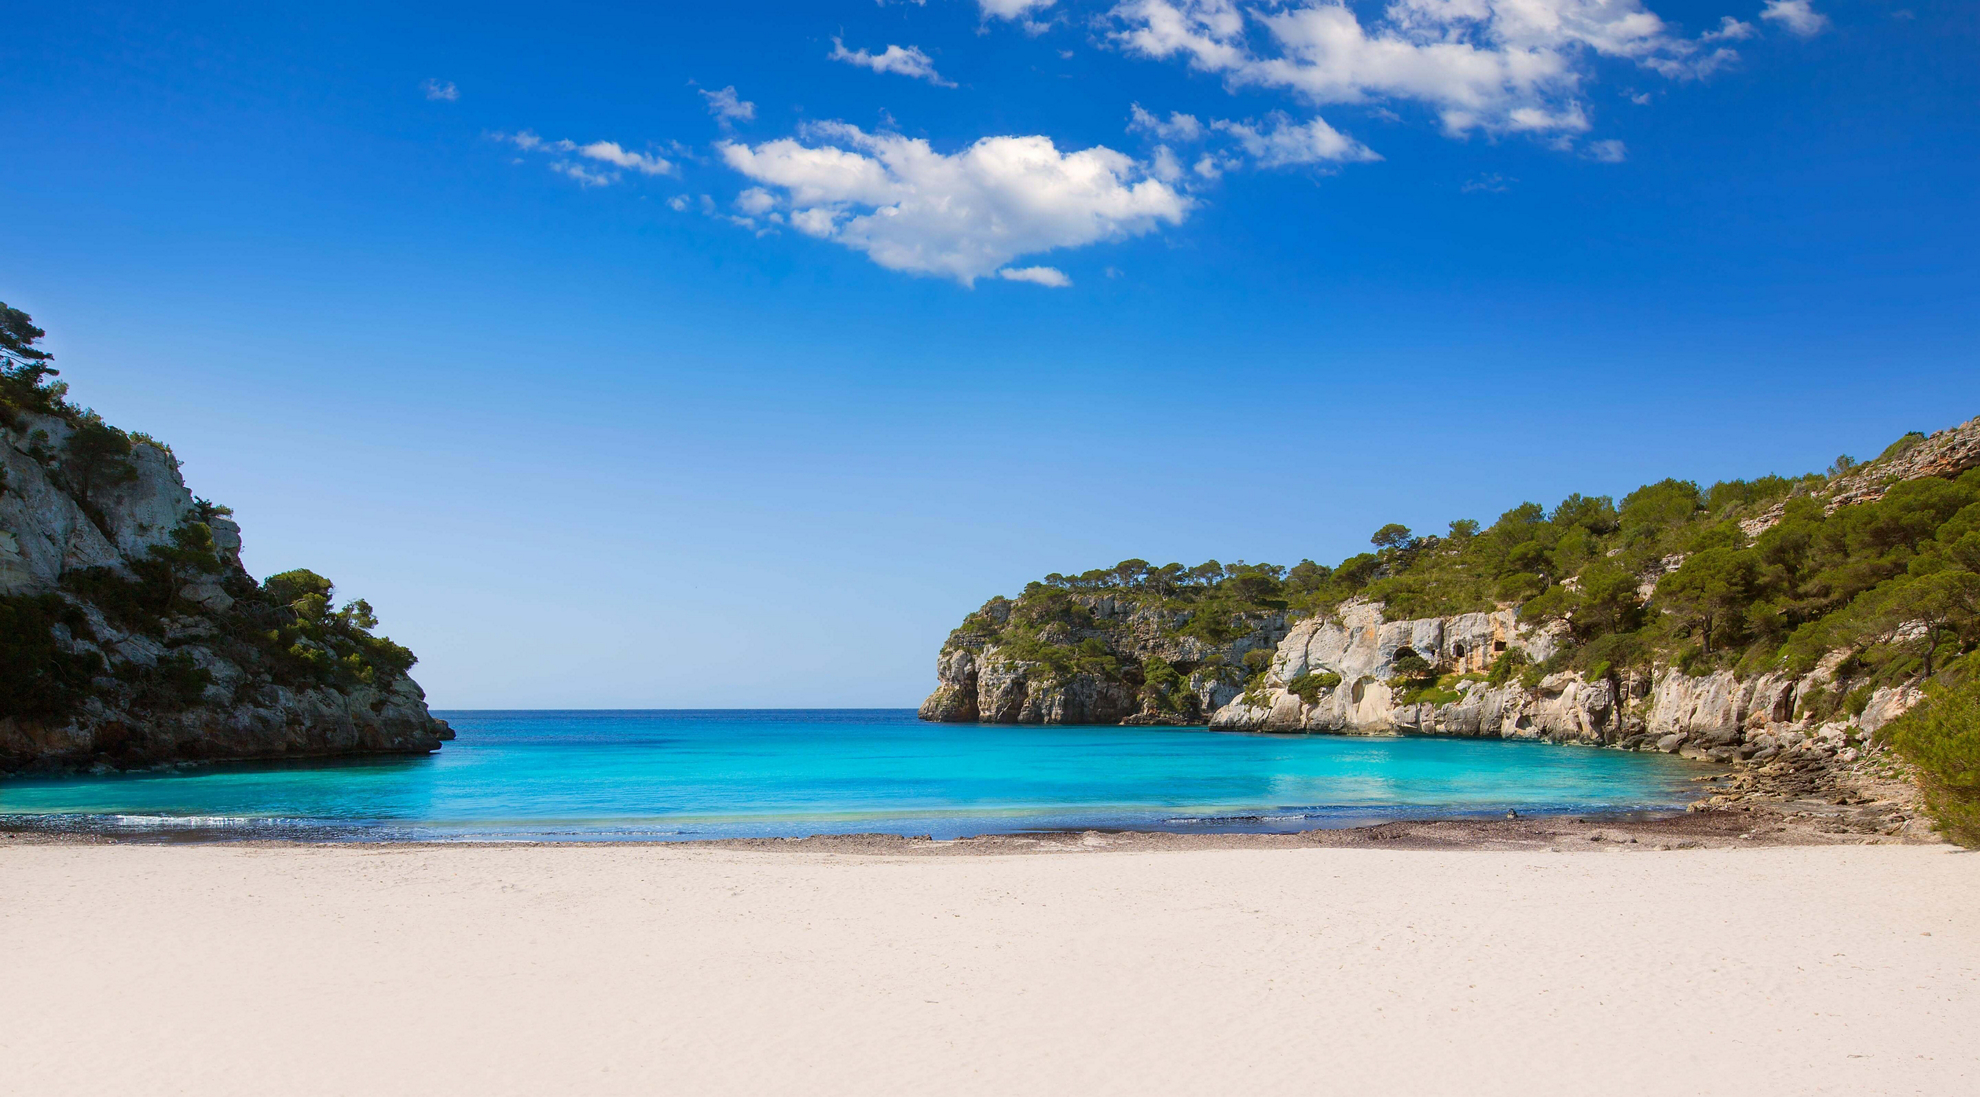 Typischer Balearen-Strand: weißer Sand und türkisblaues Wasser.